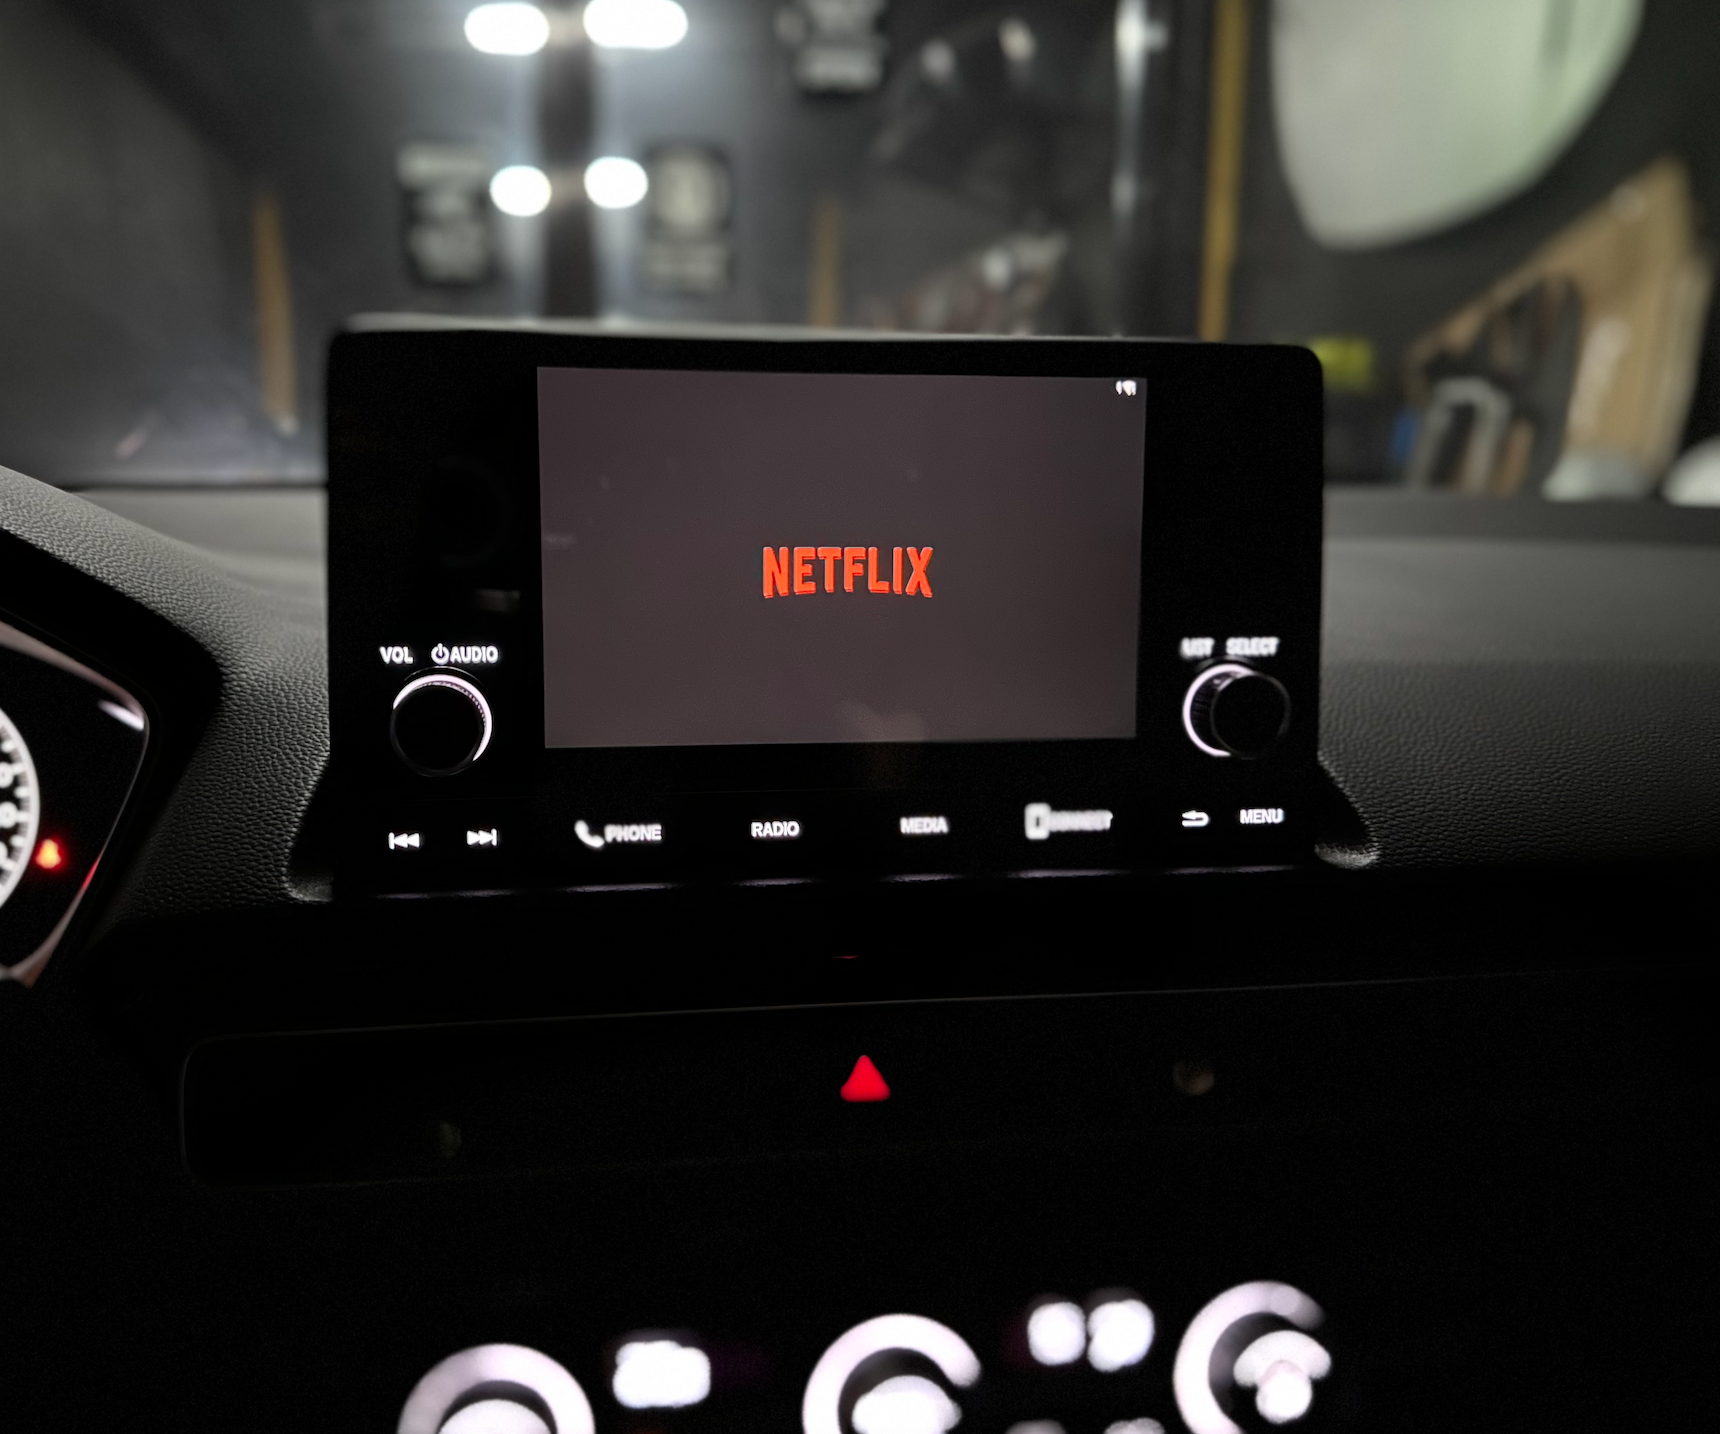 Audi A3 8V Wireless Carplay & Android Auto Box